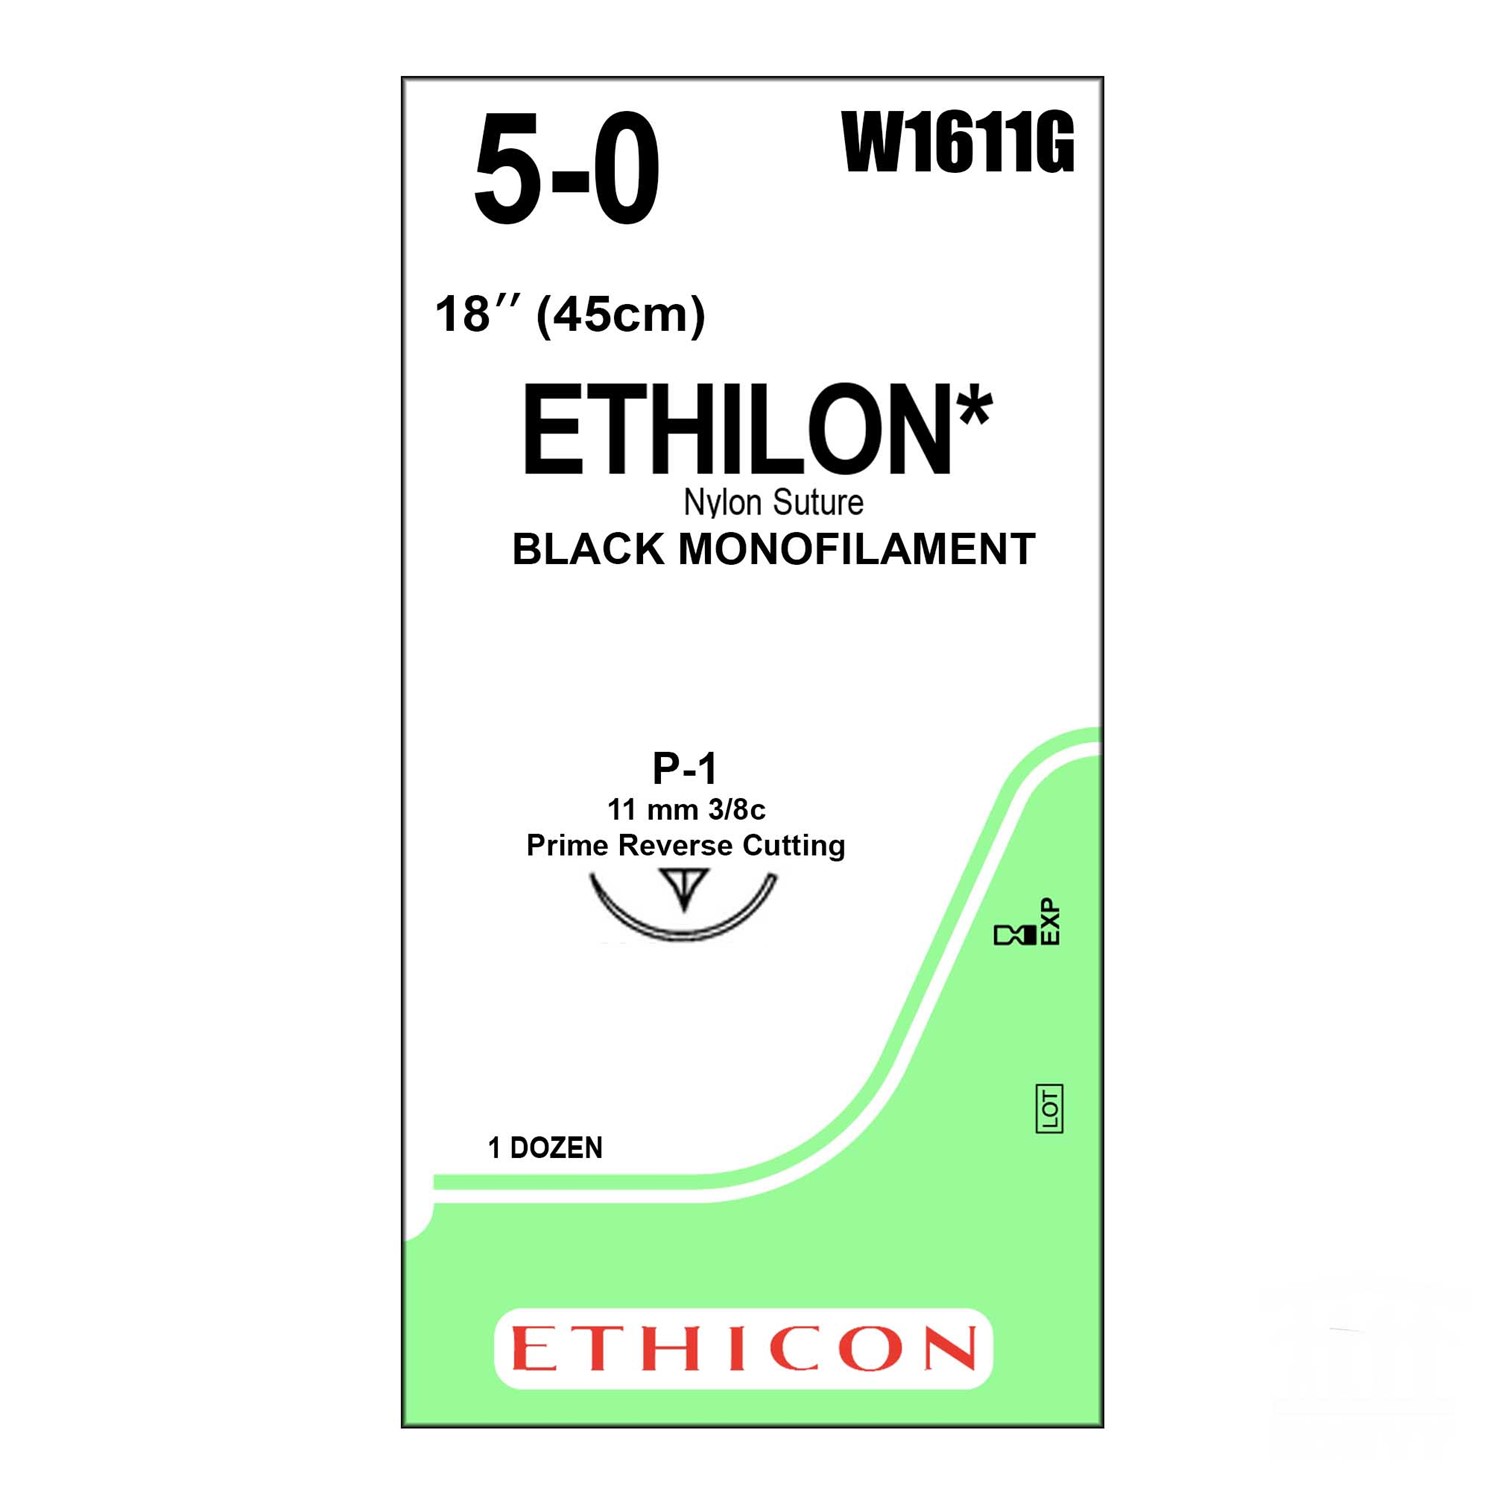 Ράμμα Ethilon No 5/0 με βελόνα 11mm Κόπτουσα Πλαστικής P-1 Multipass, 3/8c, μήκος ράμματος 45cm, χρώμα μαύρο